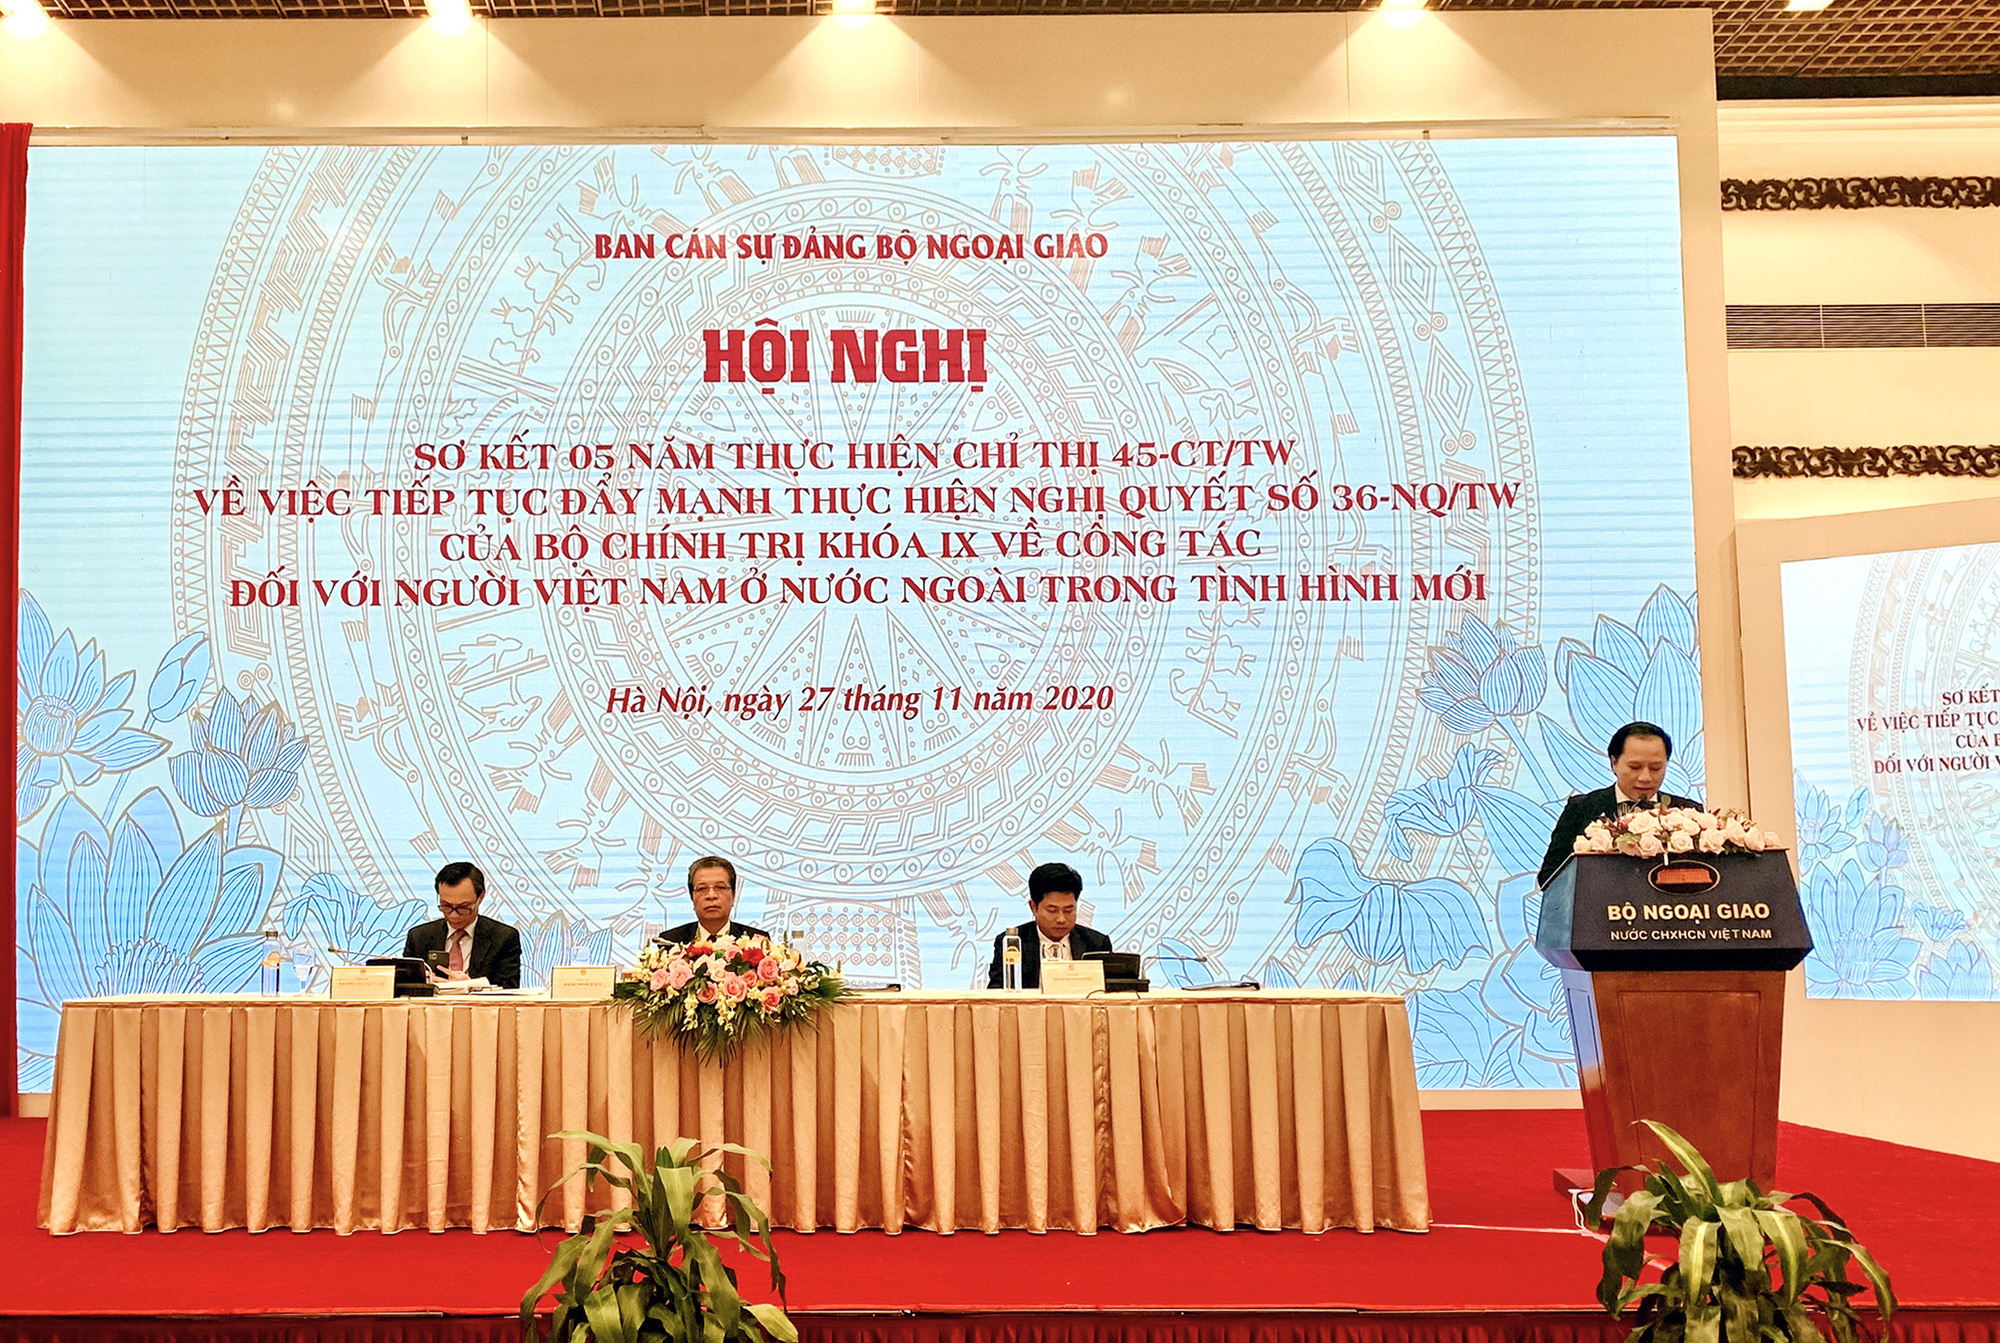 Bộ Văn hóa, Thể thao và Du lịch tham dự Hội nghị sơ kết 05 năm thực hiện Chỉ thị 45-CT/TW về công tác đối với người Việt Nam ở nước ngoài - Ảnh 3.